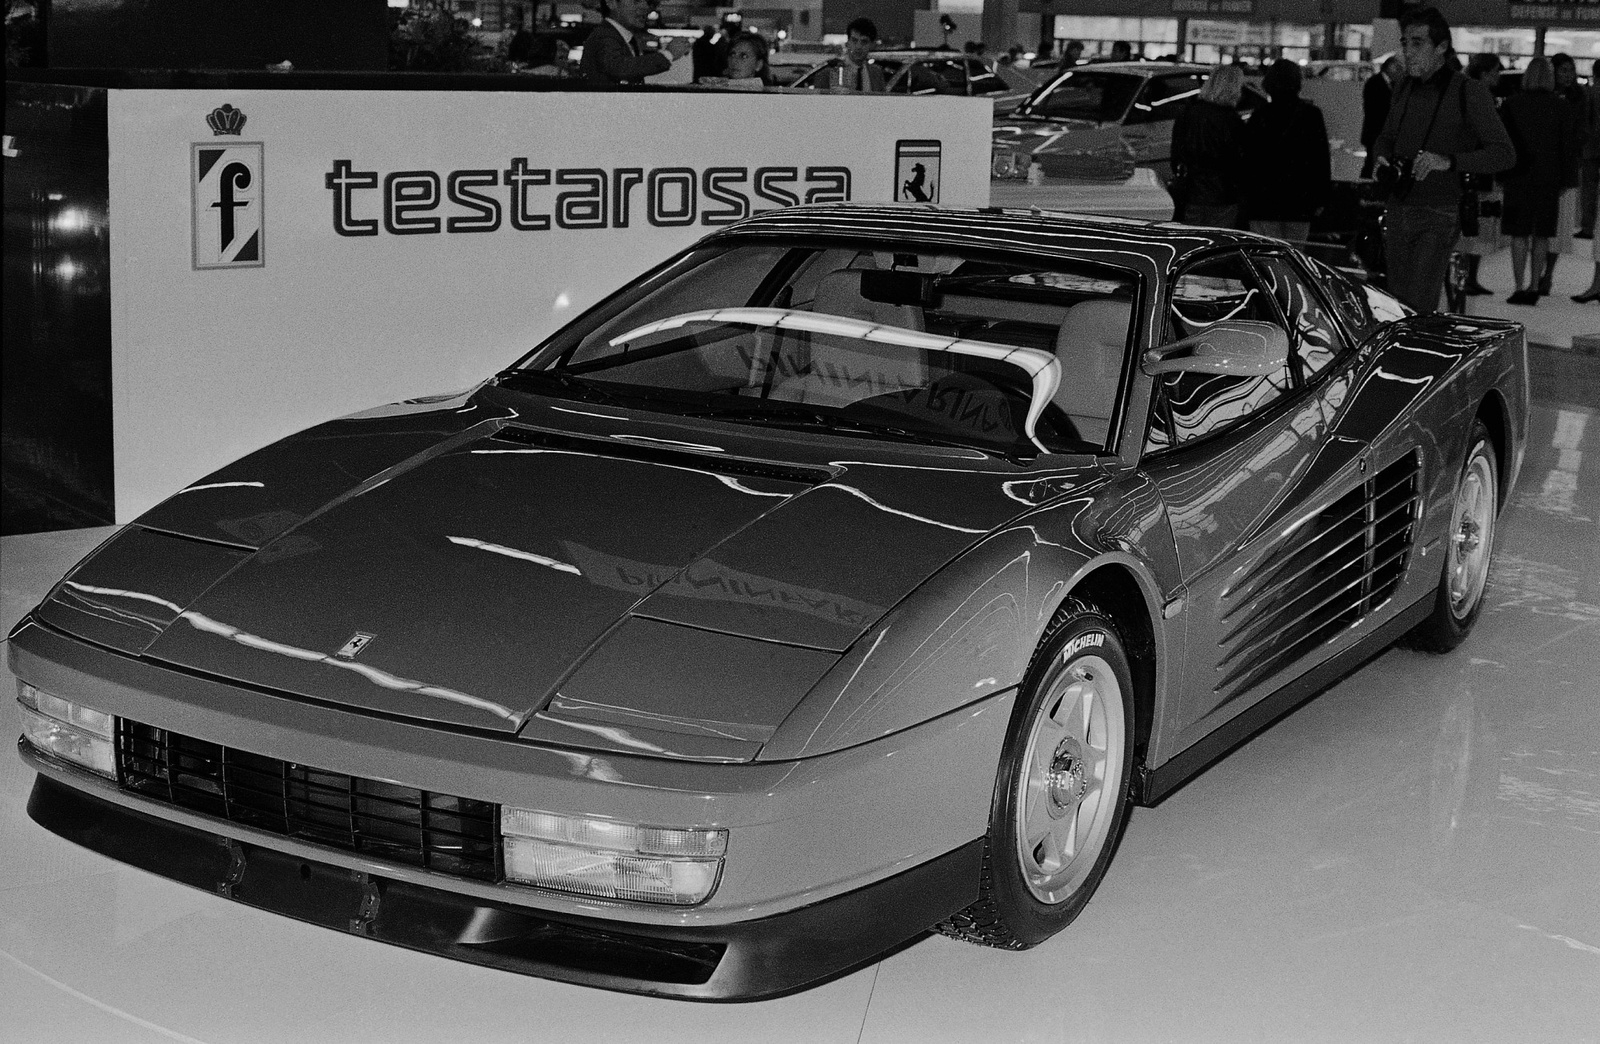 År 1984 presenterade Ferrari modellen Testarossa.
Foto: TT